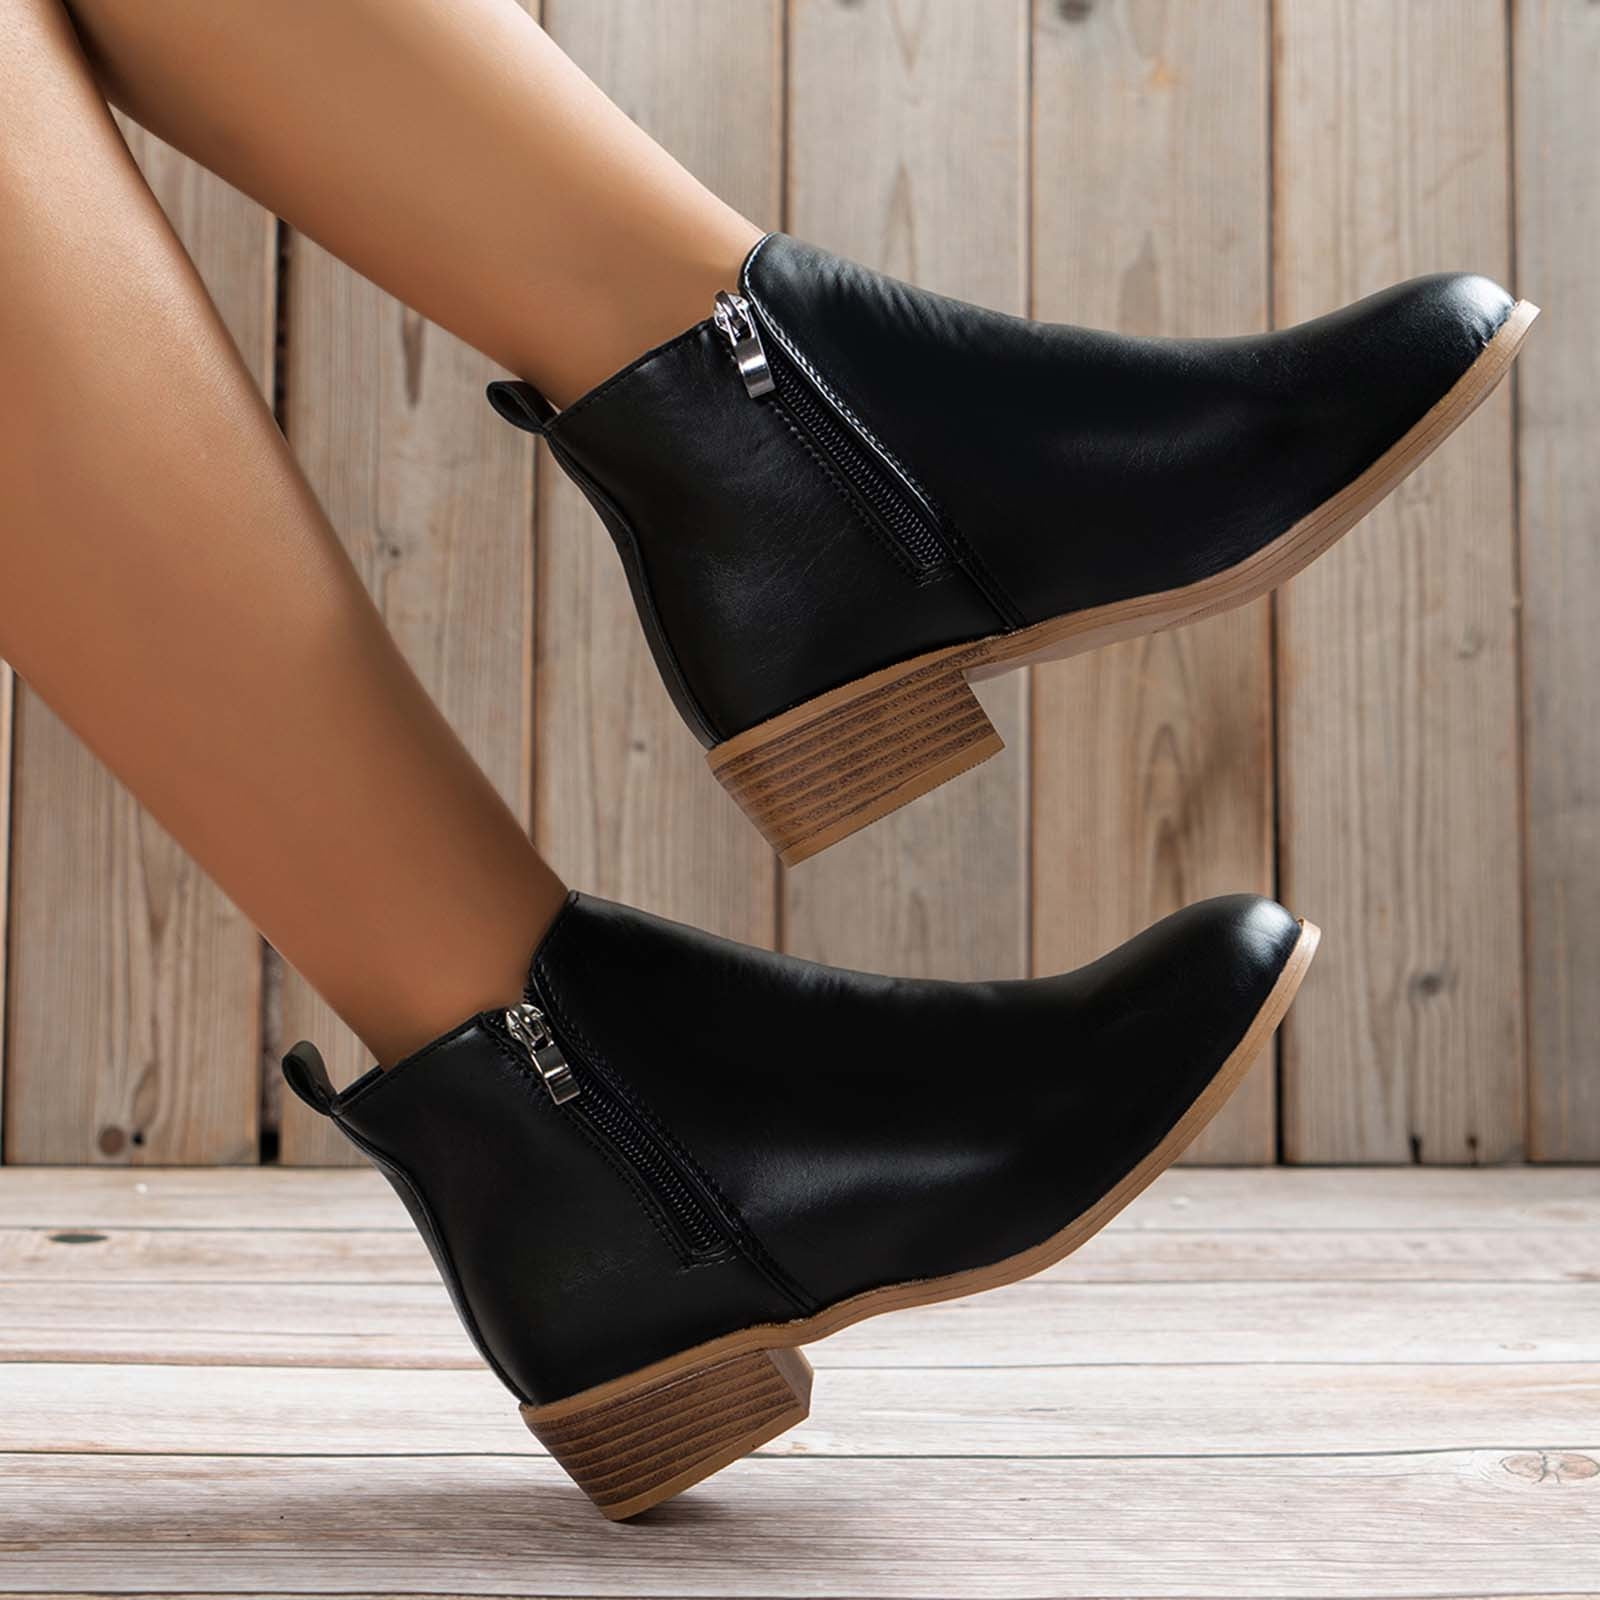 women’s black dress boots low heel